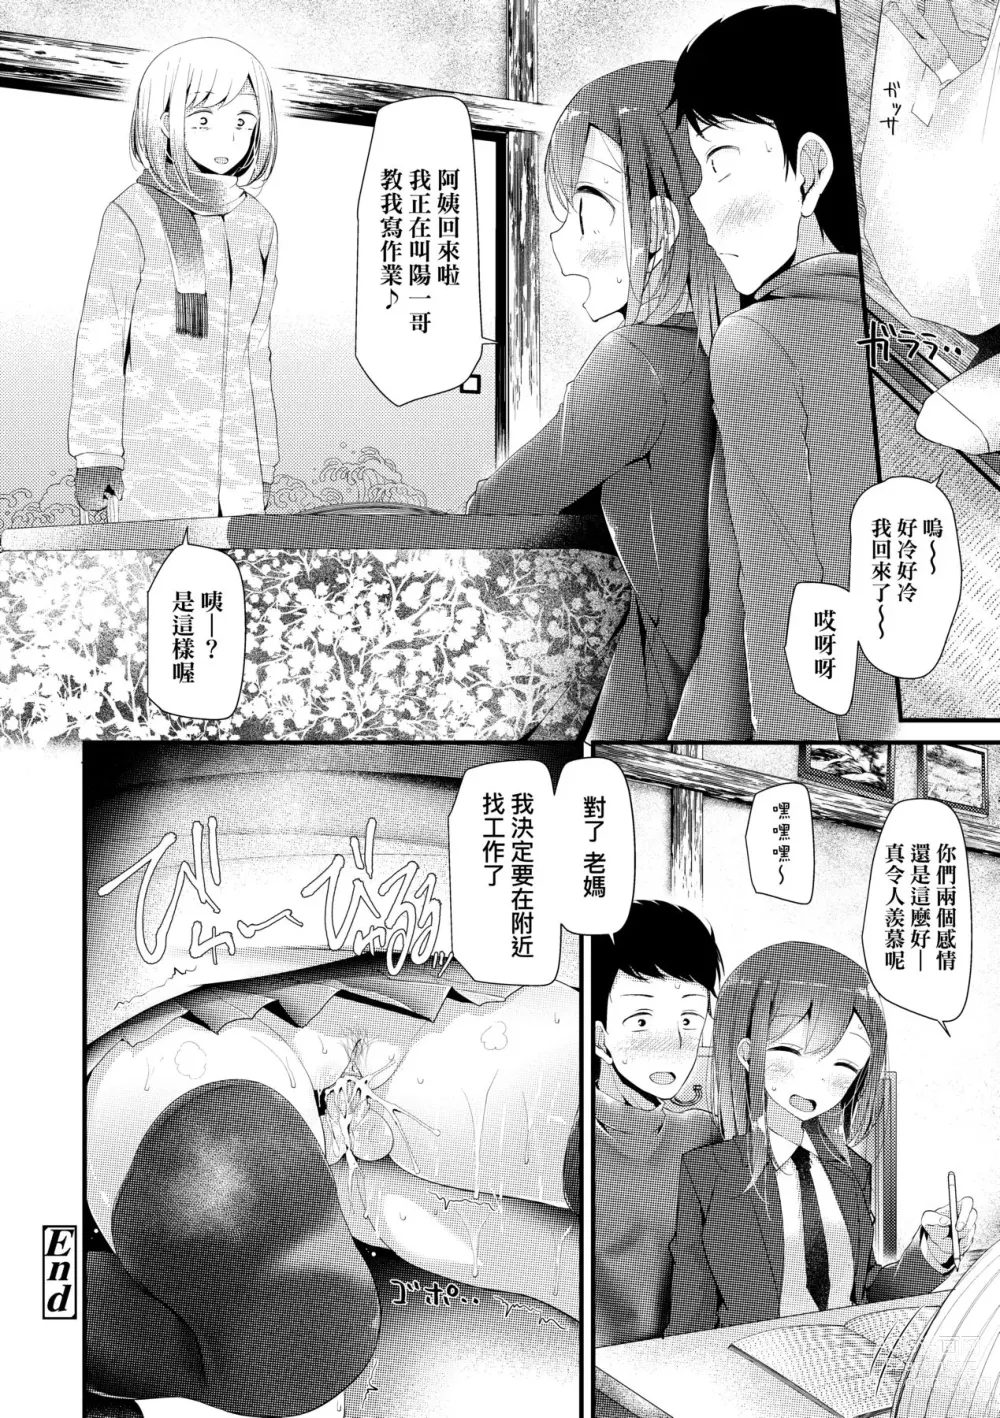 Page 161 of manga JK.REFLE (decensored)